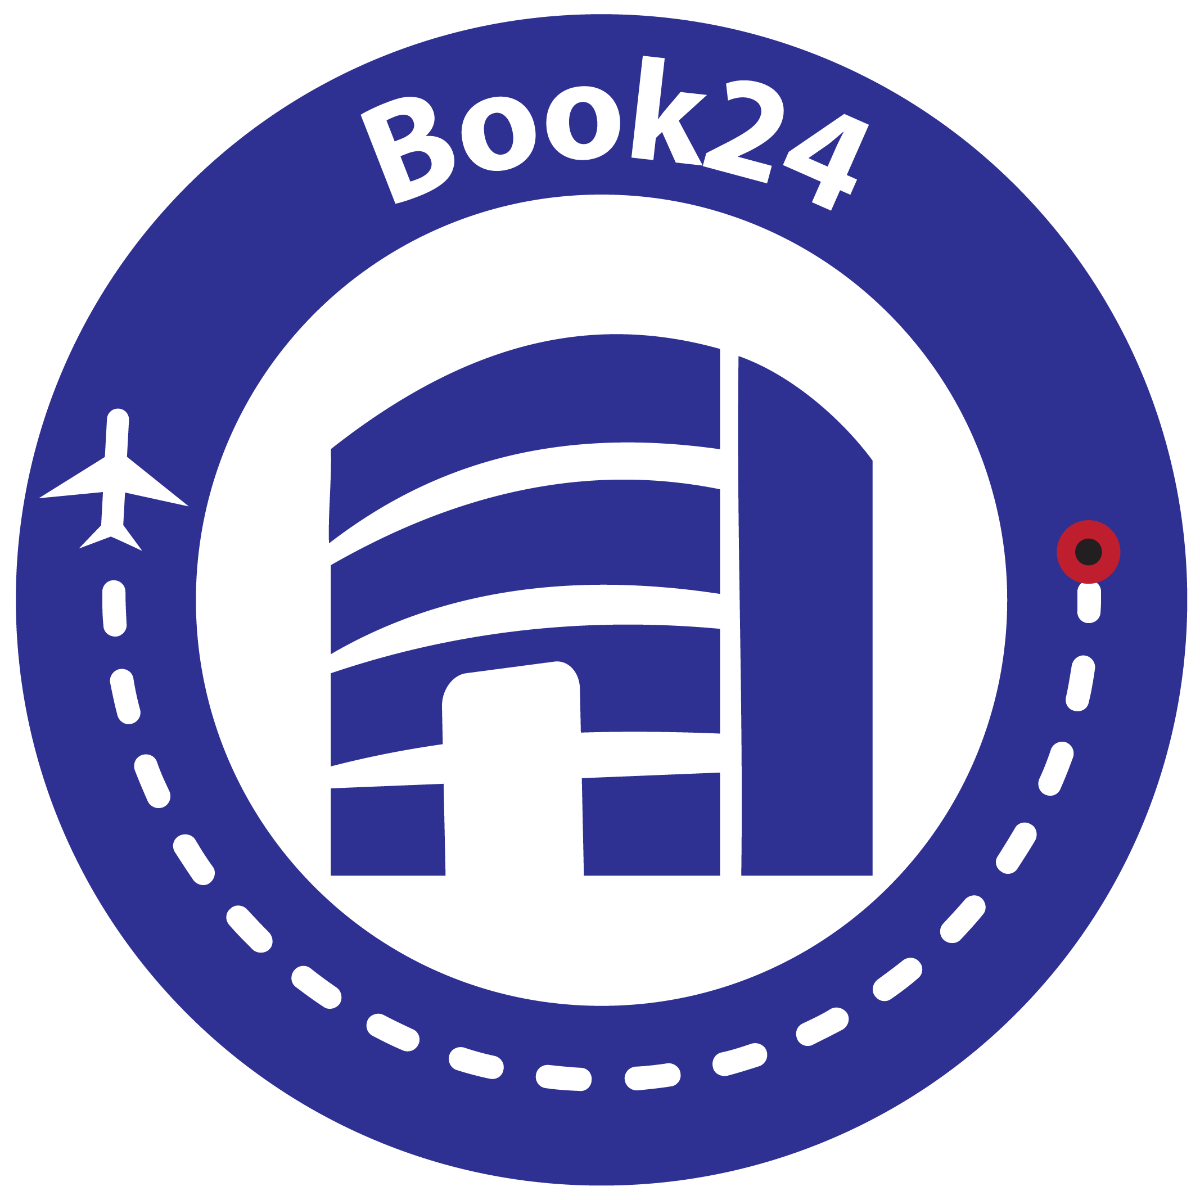 Book24.ng